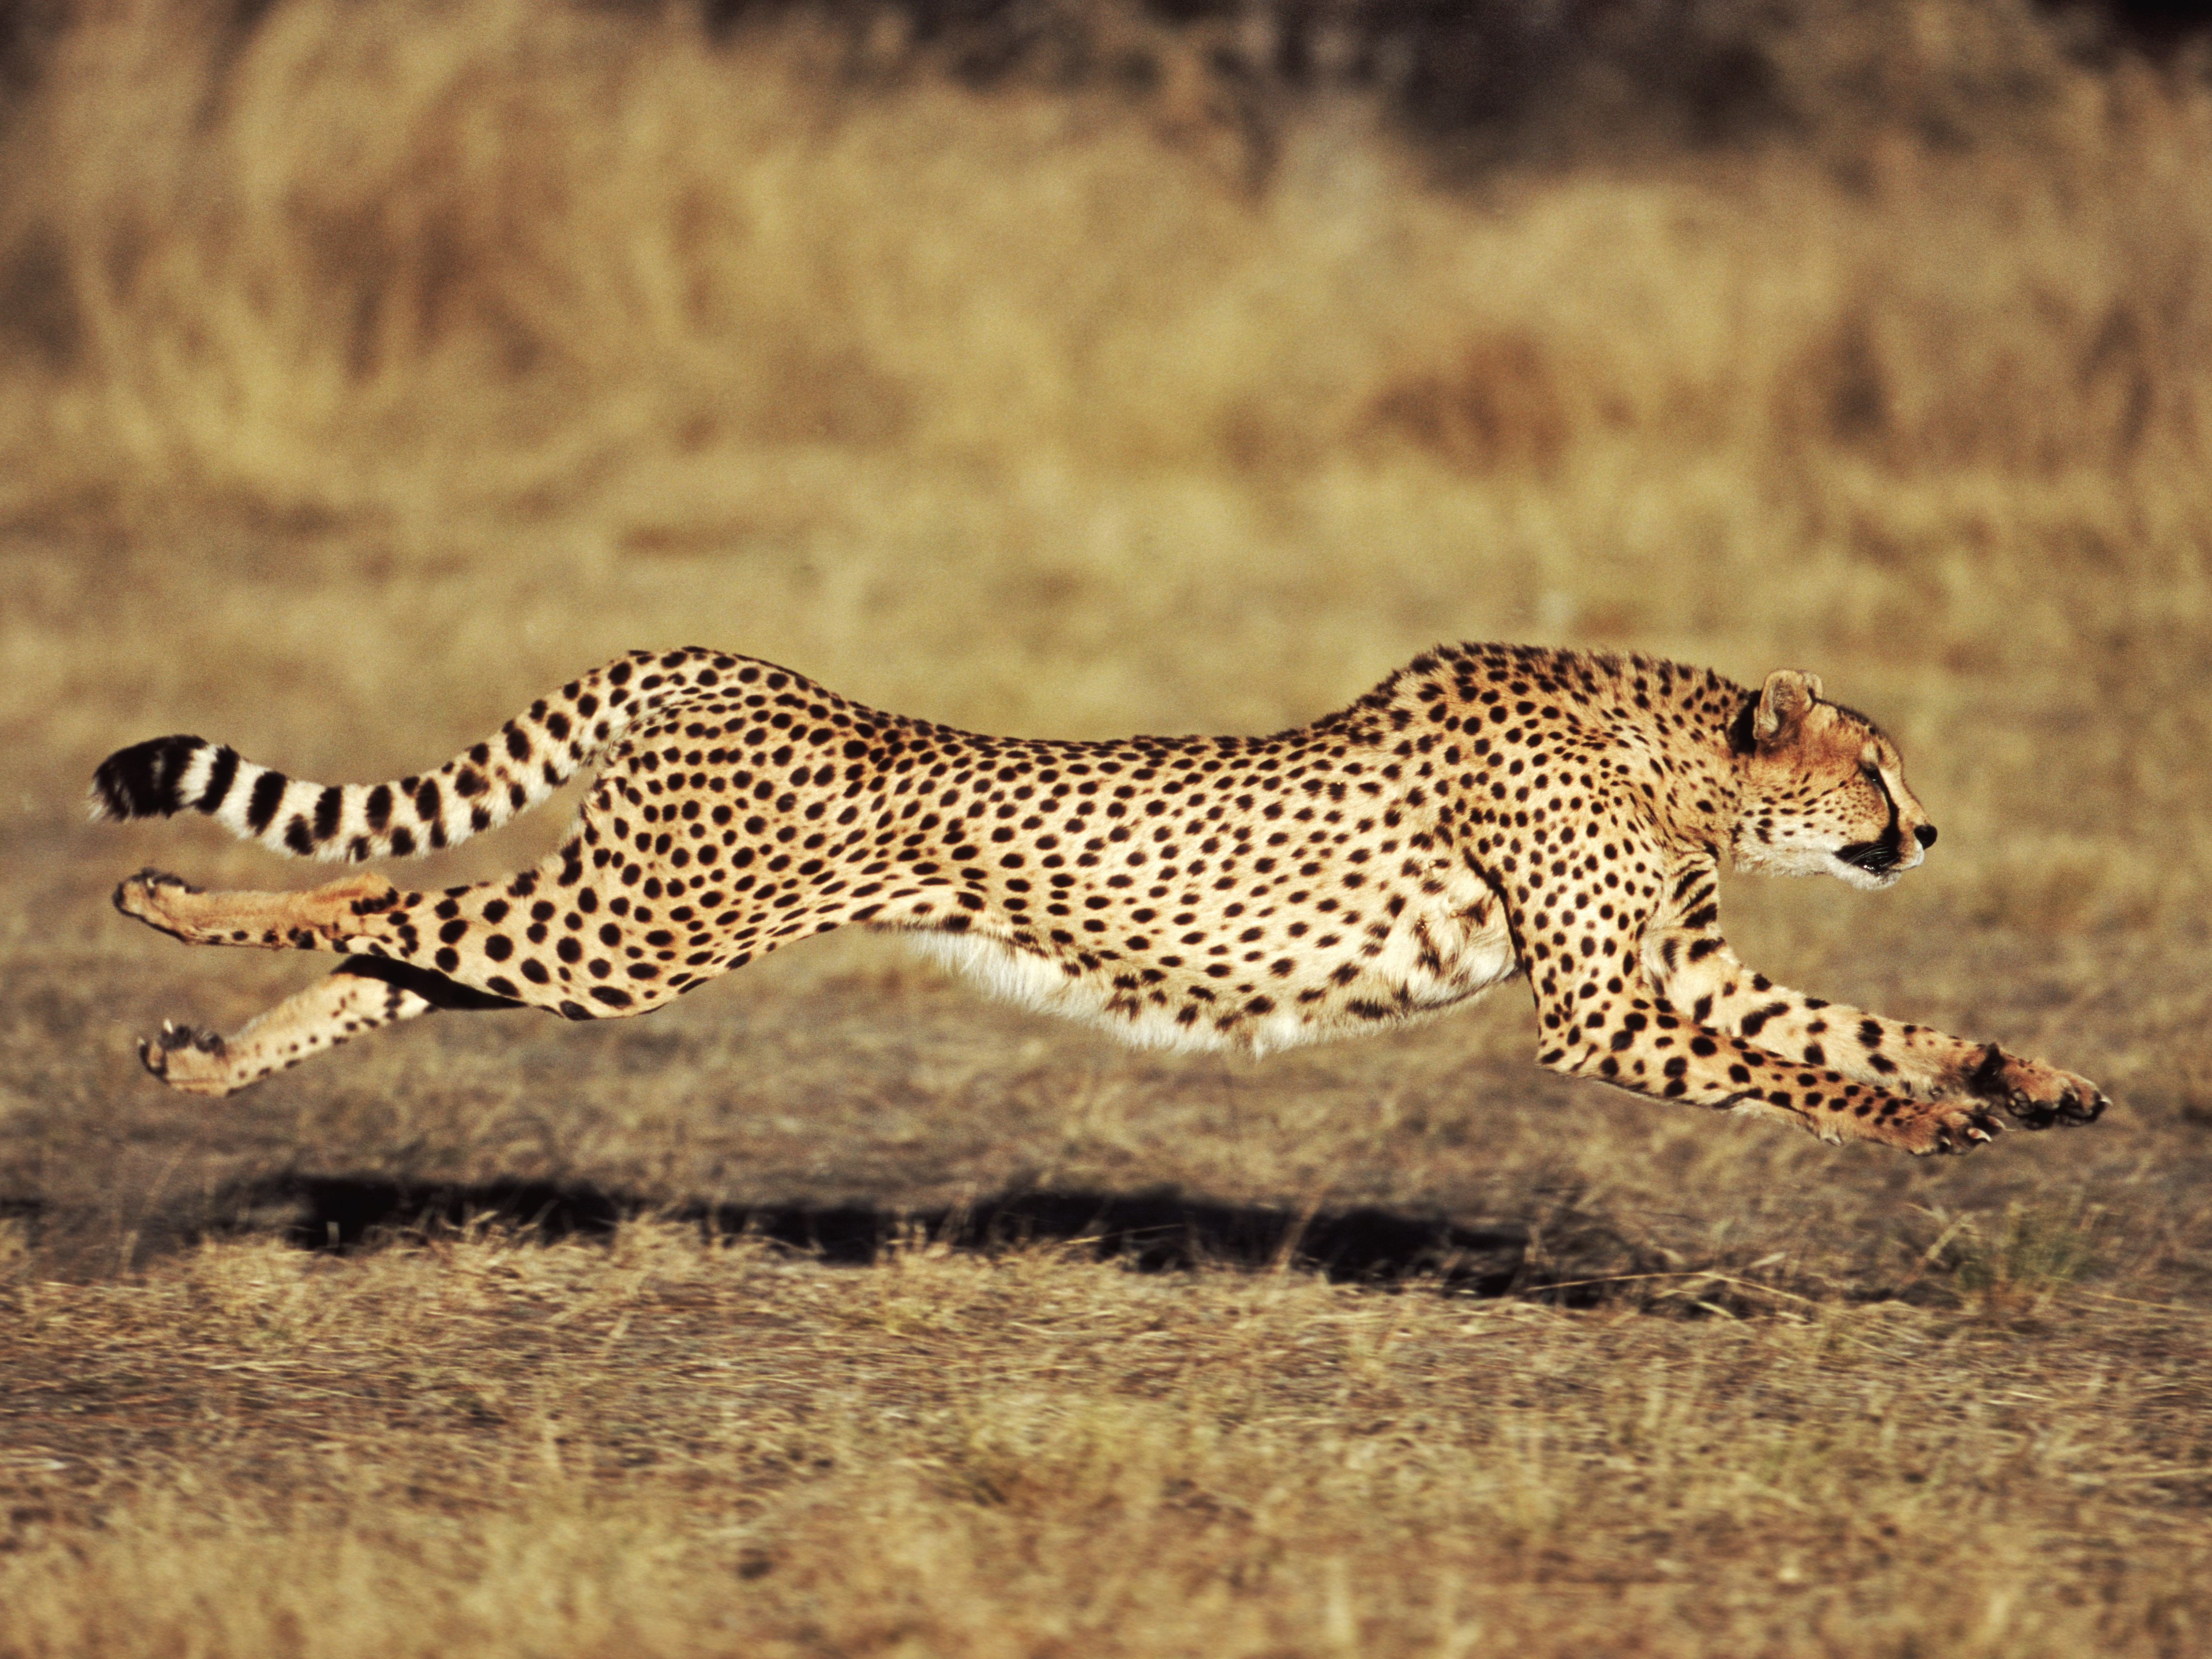 How fast can an old cheetah run?